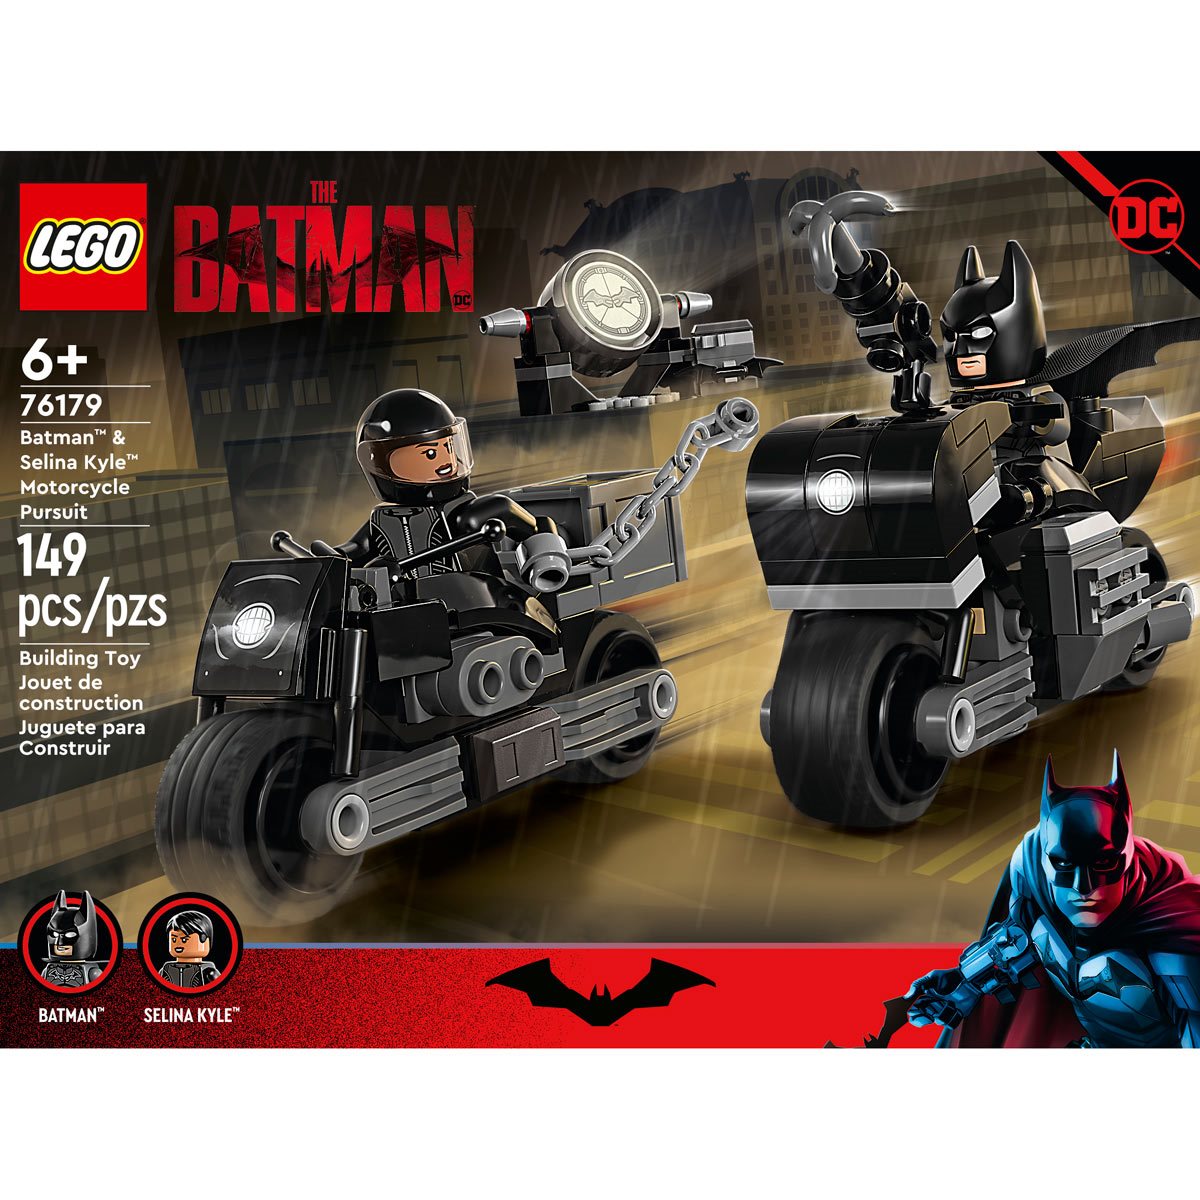 Batman™ & Selina Kyle™ Motorcycle Pursuit 76179, DC